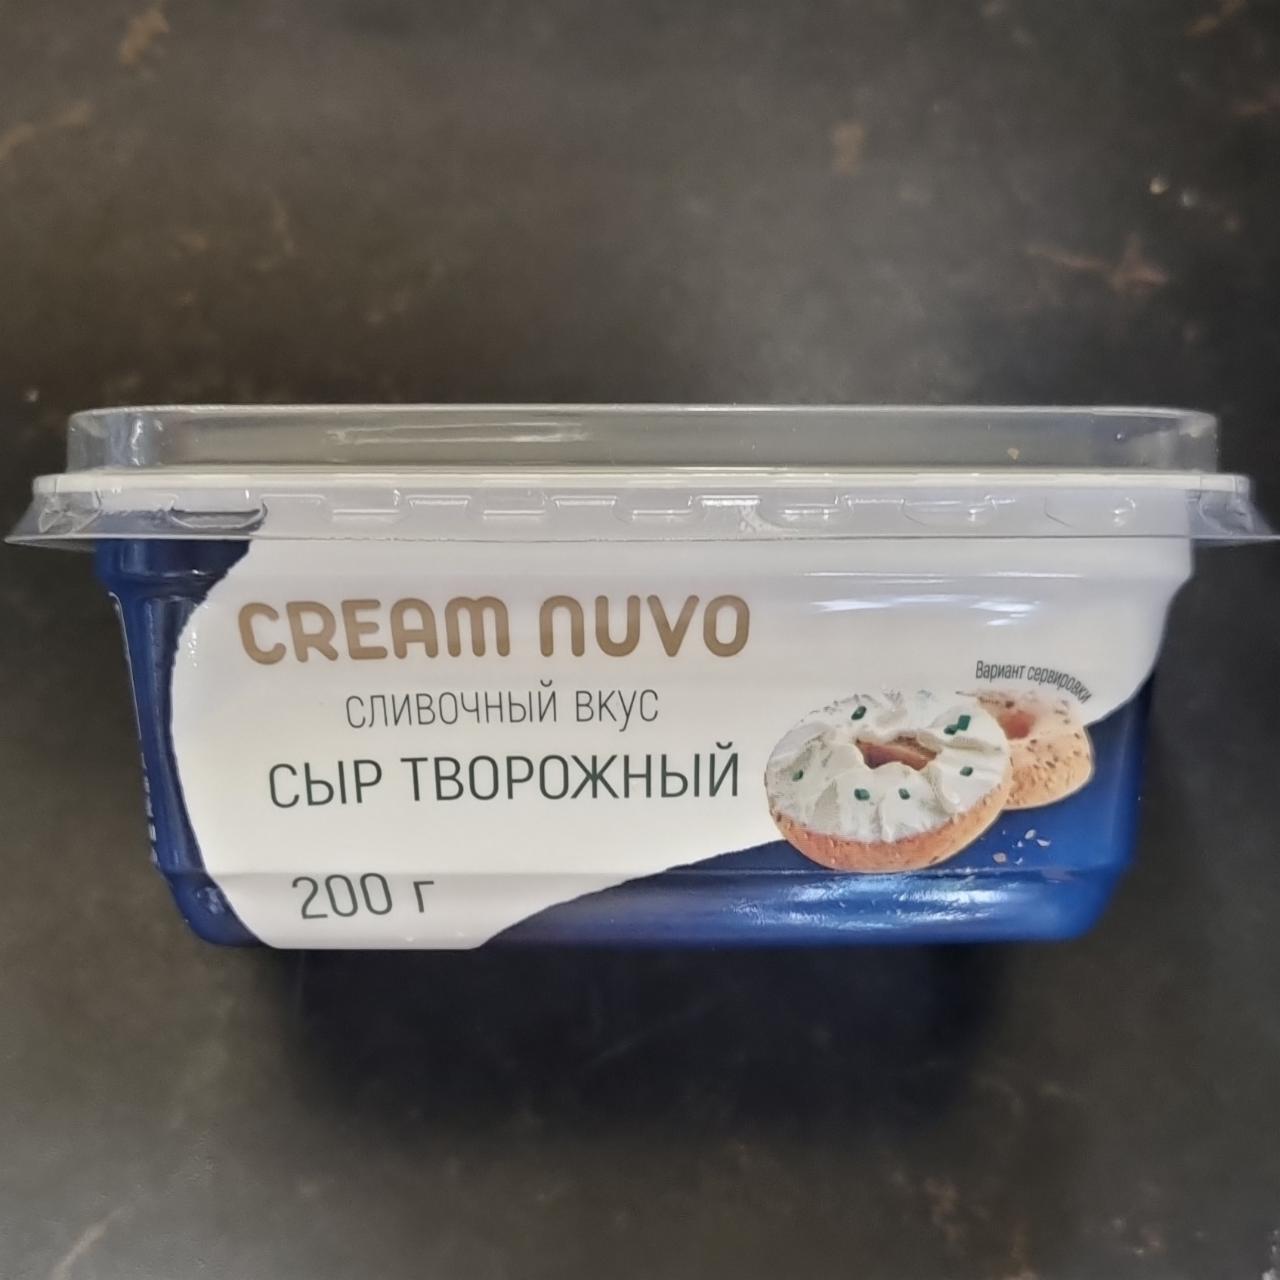 Фото - Сыр творожный сливочный вкус Cream Nuvo